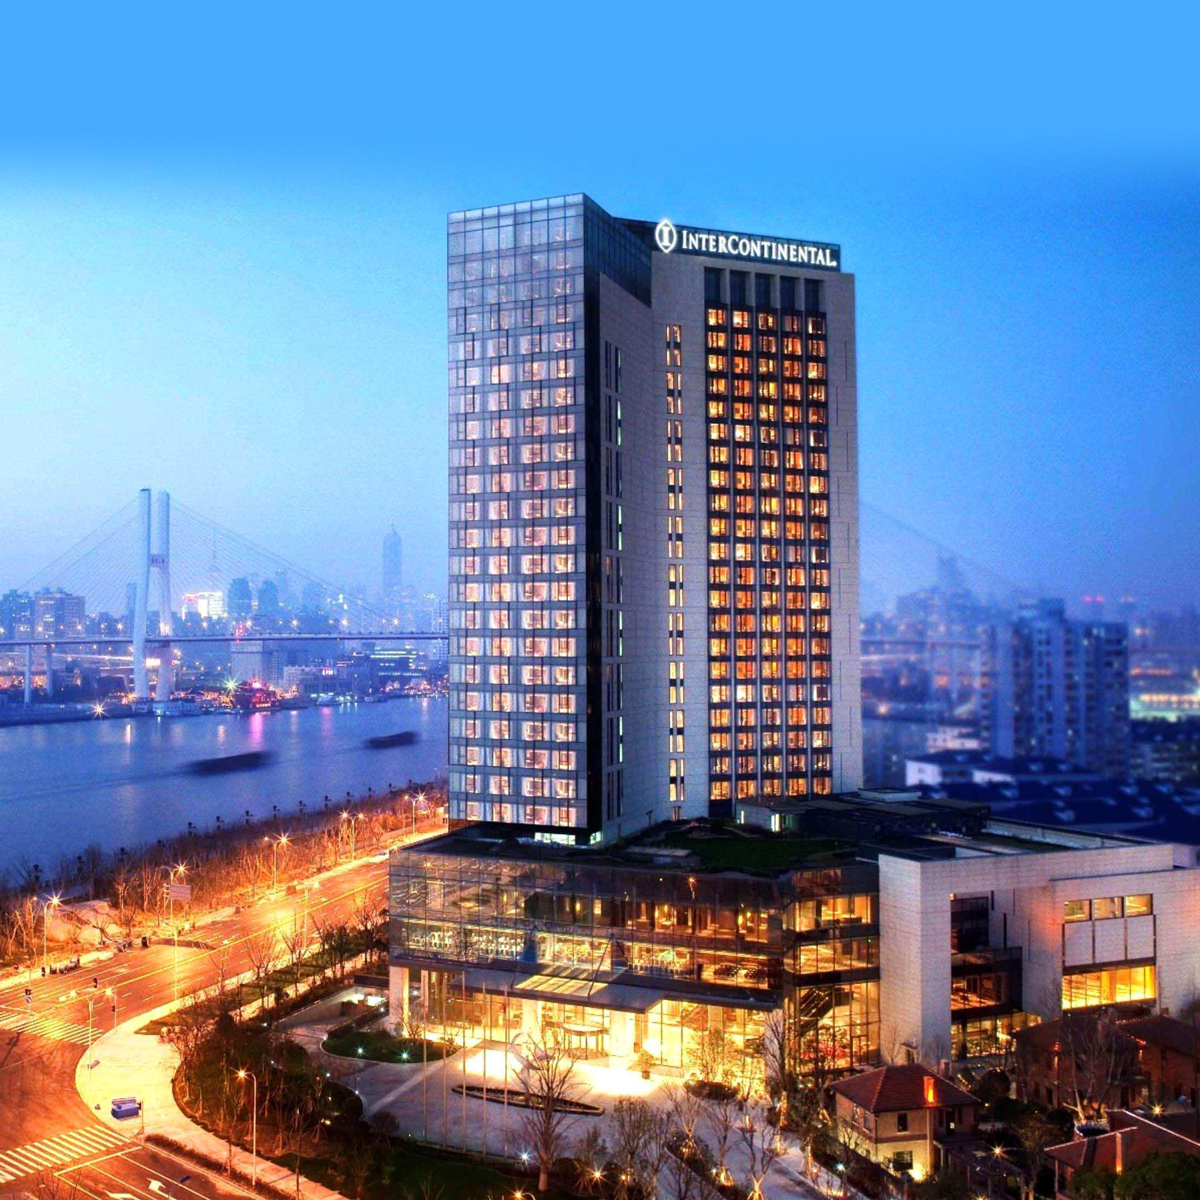 全世界最值得参观的酒店在上海开业了：宝丽嘉内部奢华大解密！